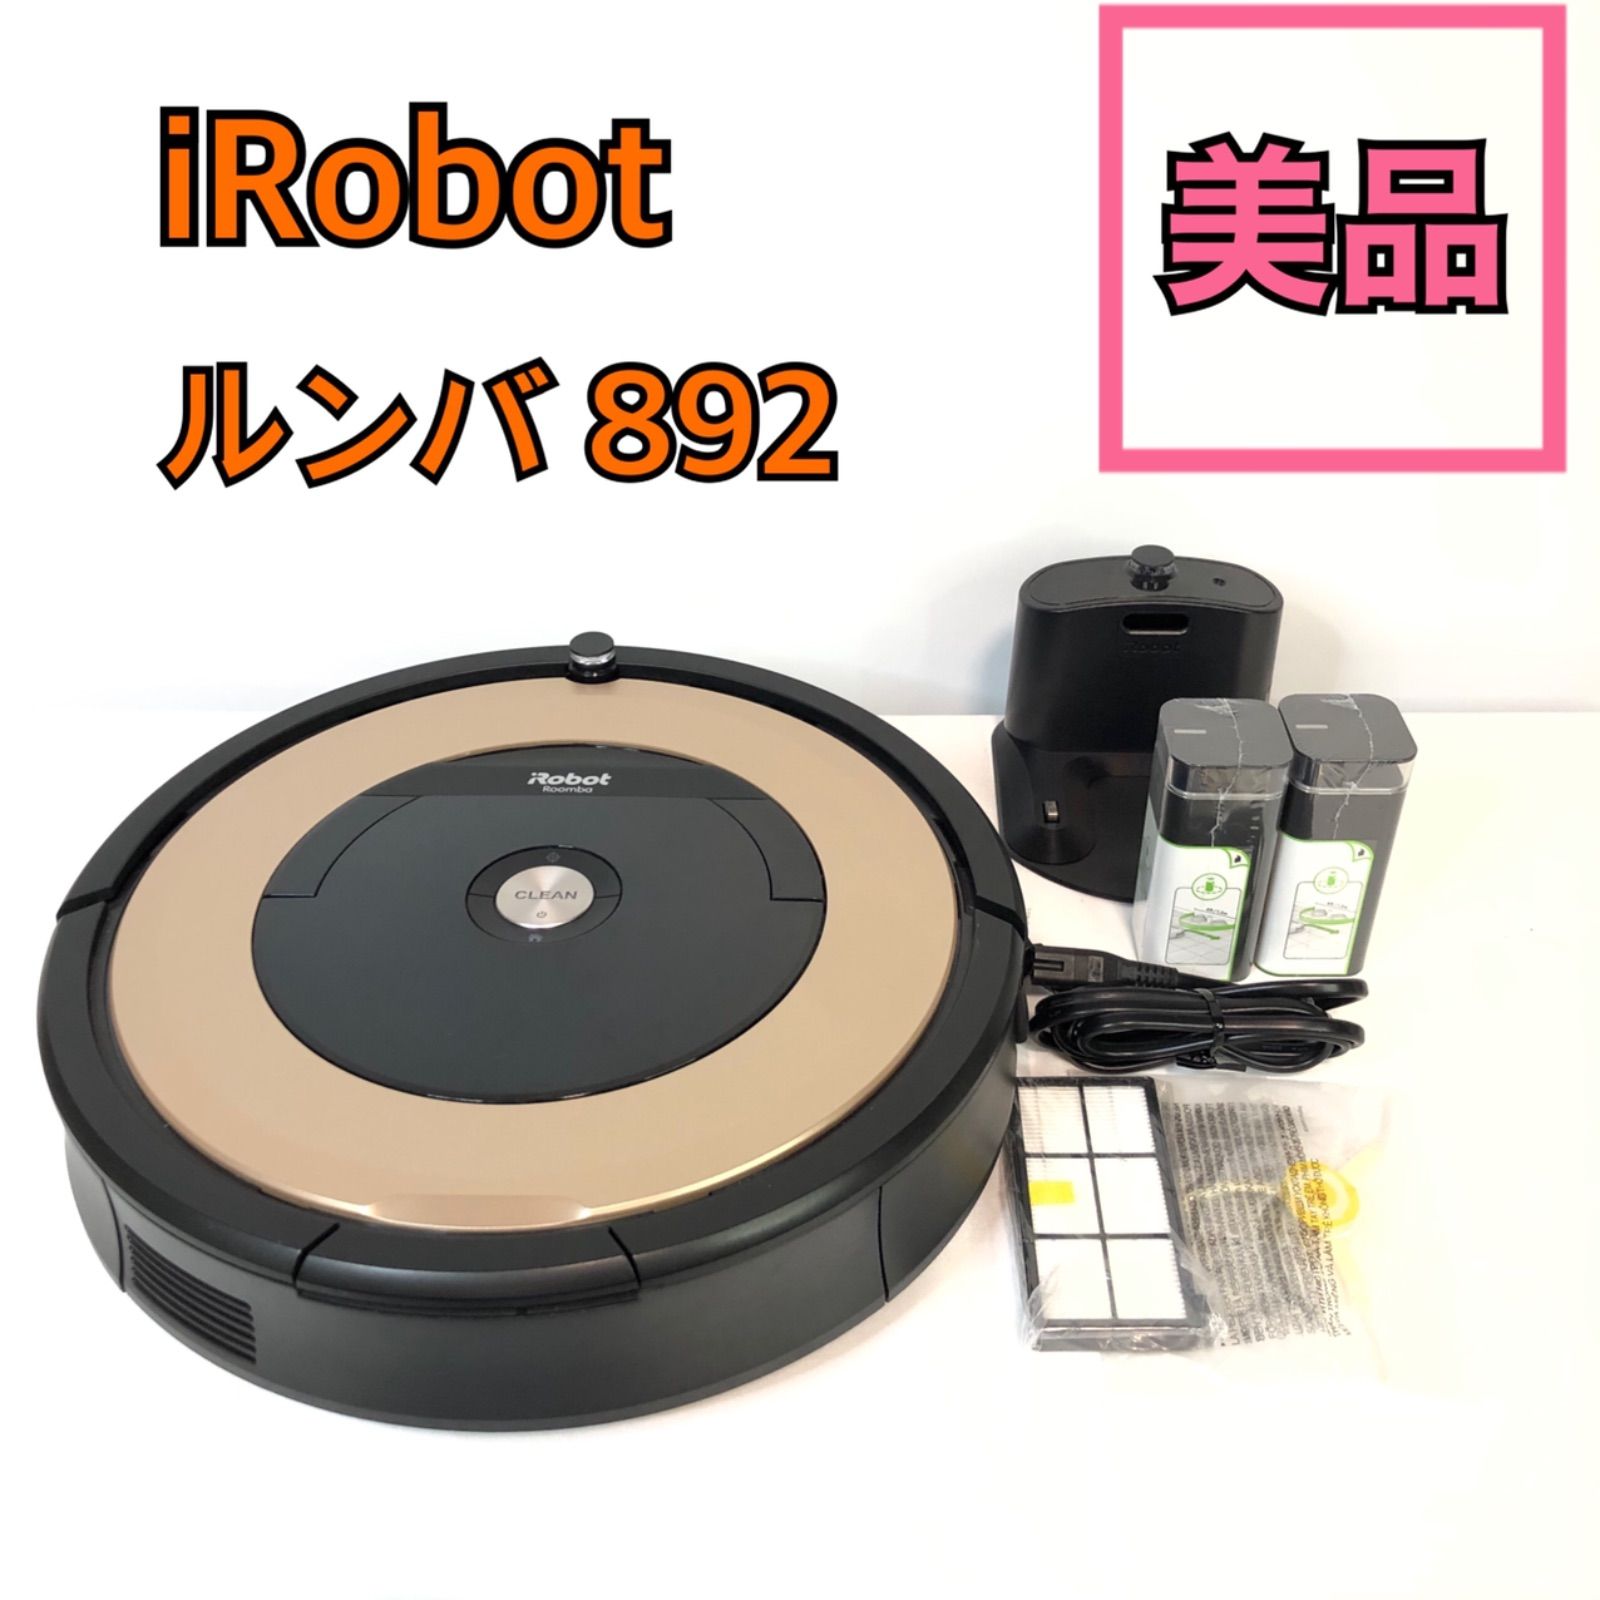 美品 iRobot rumba 892 ルンバ ロボット掃除機 - Reuse - メルカリ